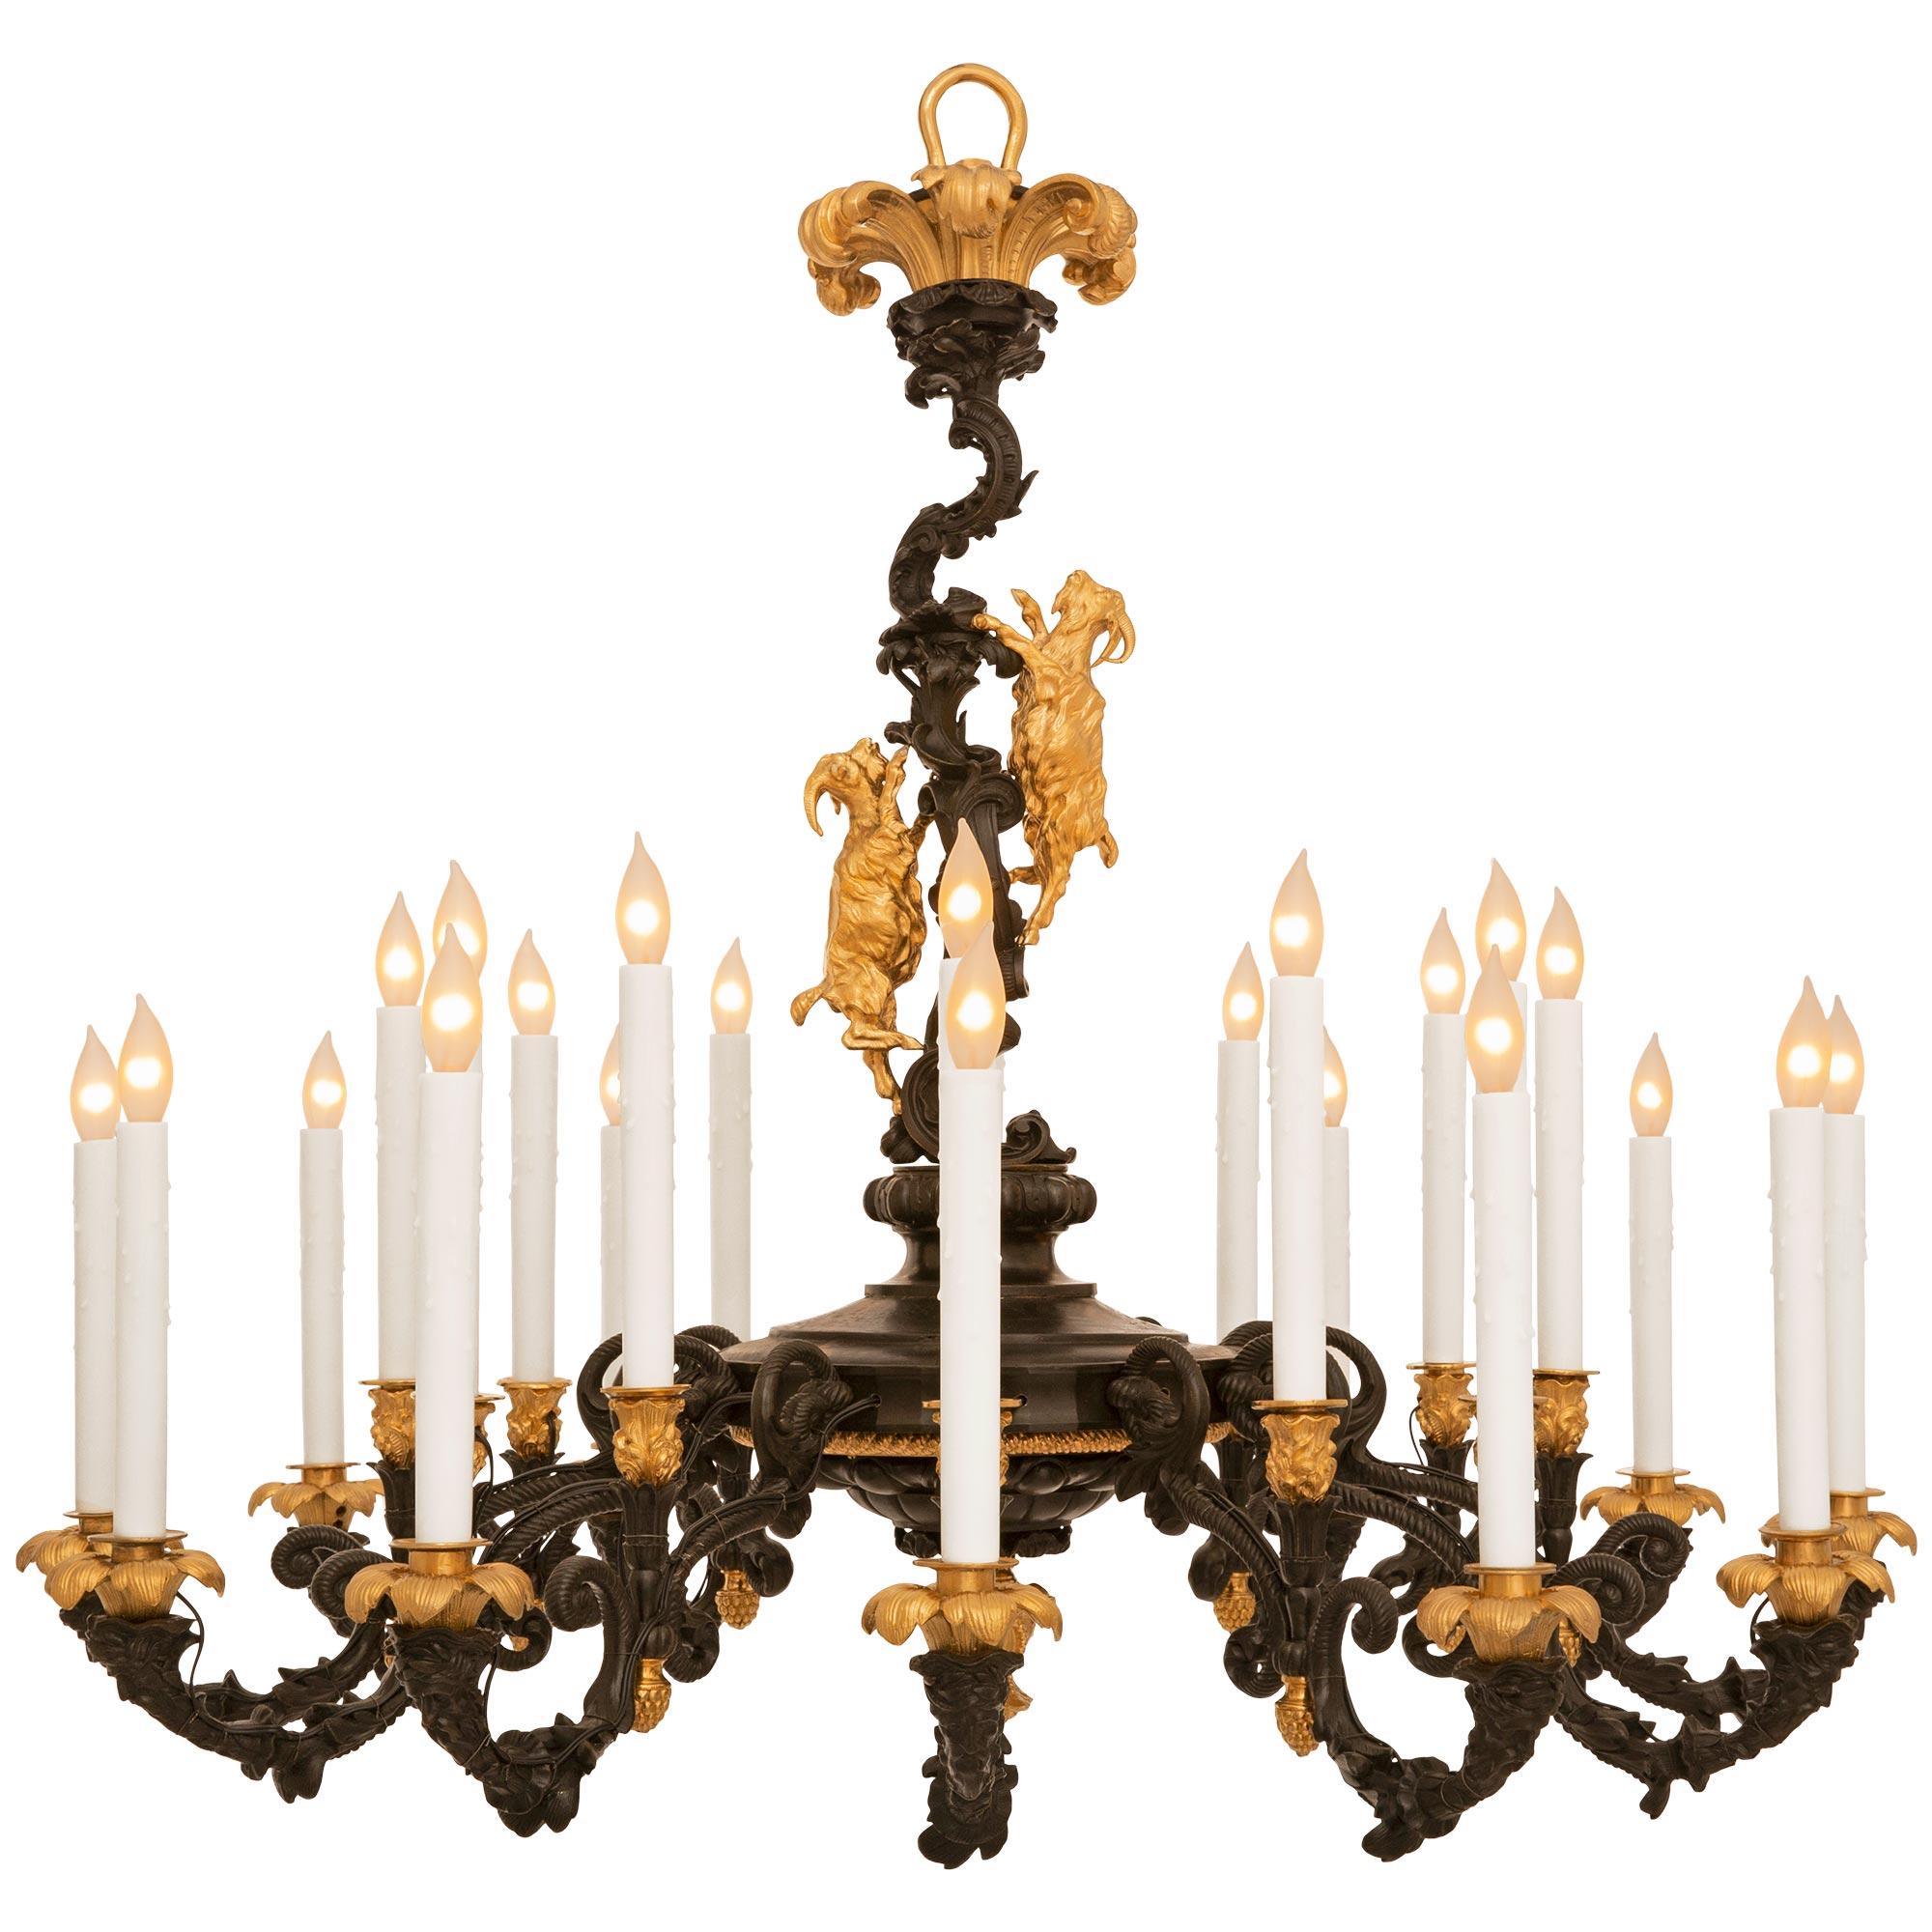 Magnifique lustre en bronze patiné et bronze doré de style Louis XV du 19ème siècle. Ce lustre exquis à douze bras et vingt-quatre lumières est centré autour d'un fleuron inférieur en bronze doré. Au-dessus du fleuron inférieur se trouve une monture